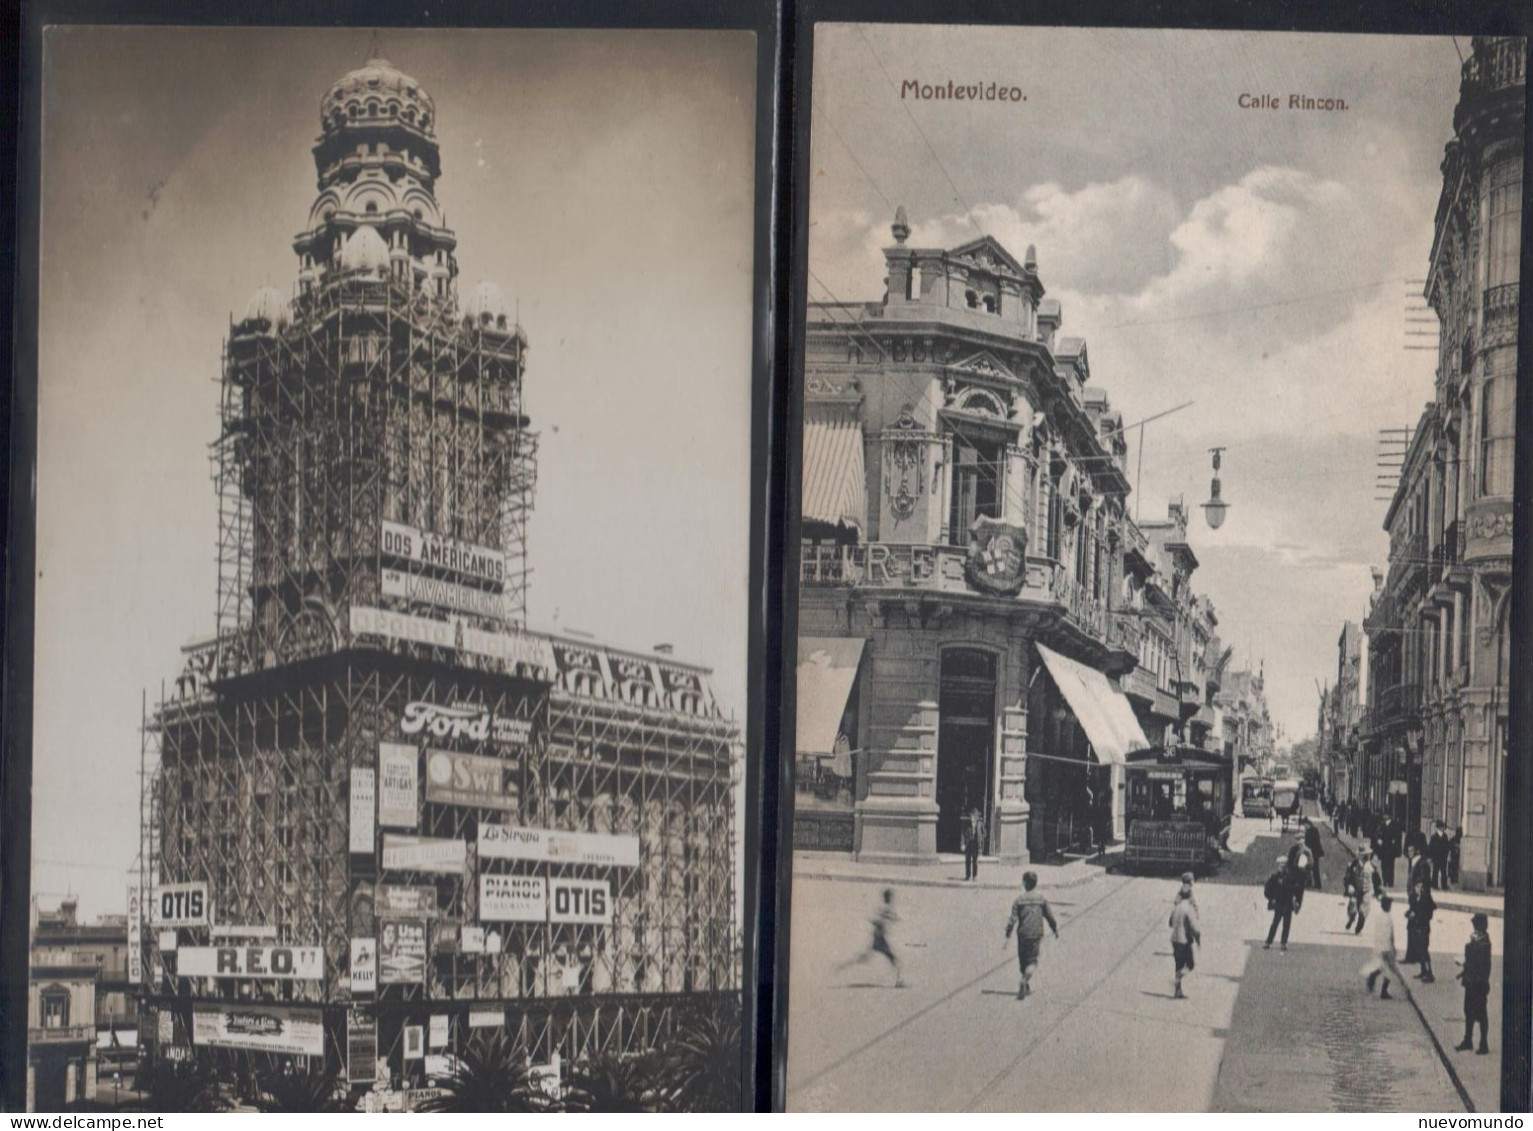 1905 - 1915 Uruguay,Montevideo 50 tarjetas.Diversos editores.Lote ideal para iniciarse en el coleccionismo de tarjetas